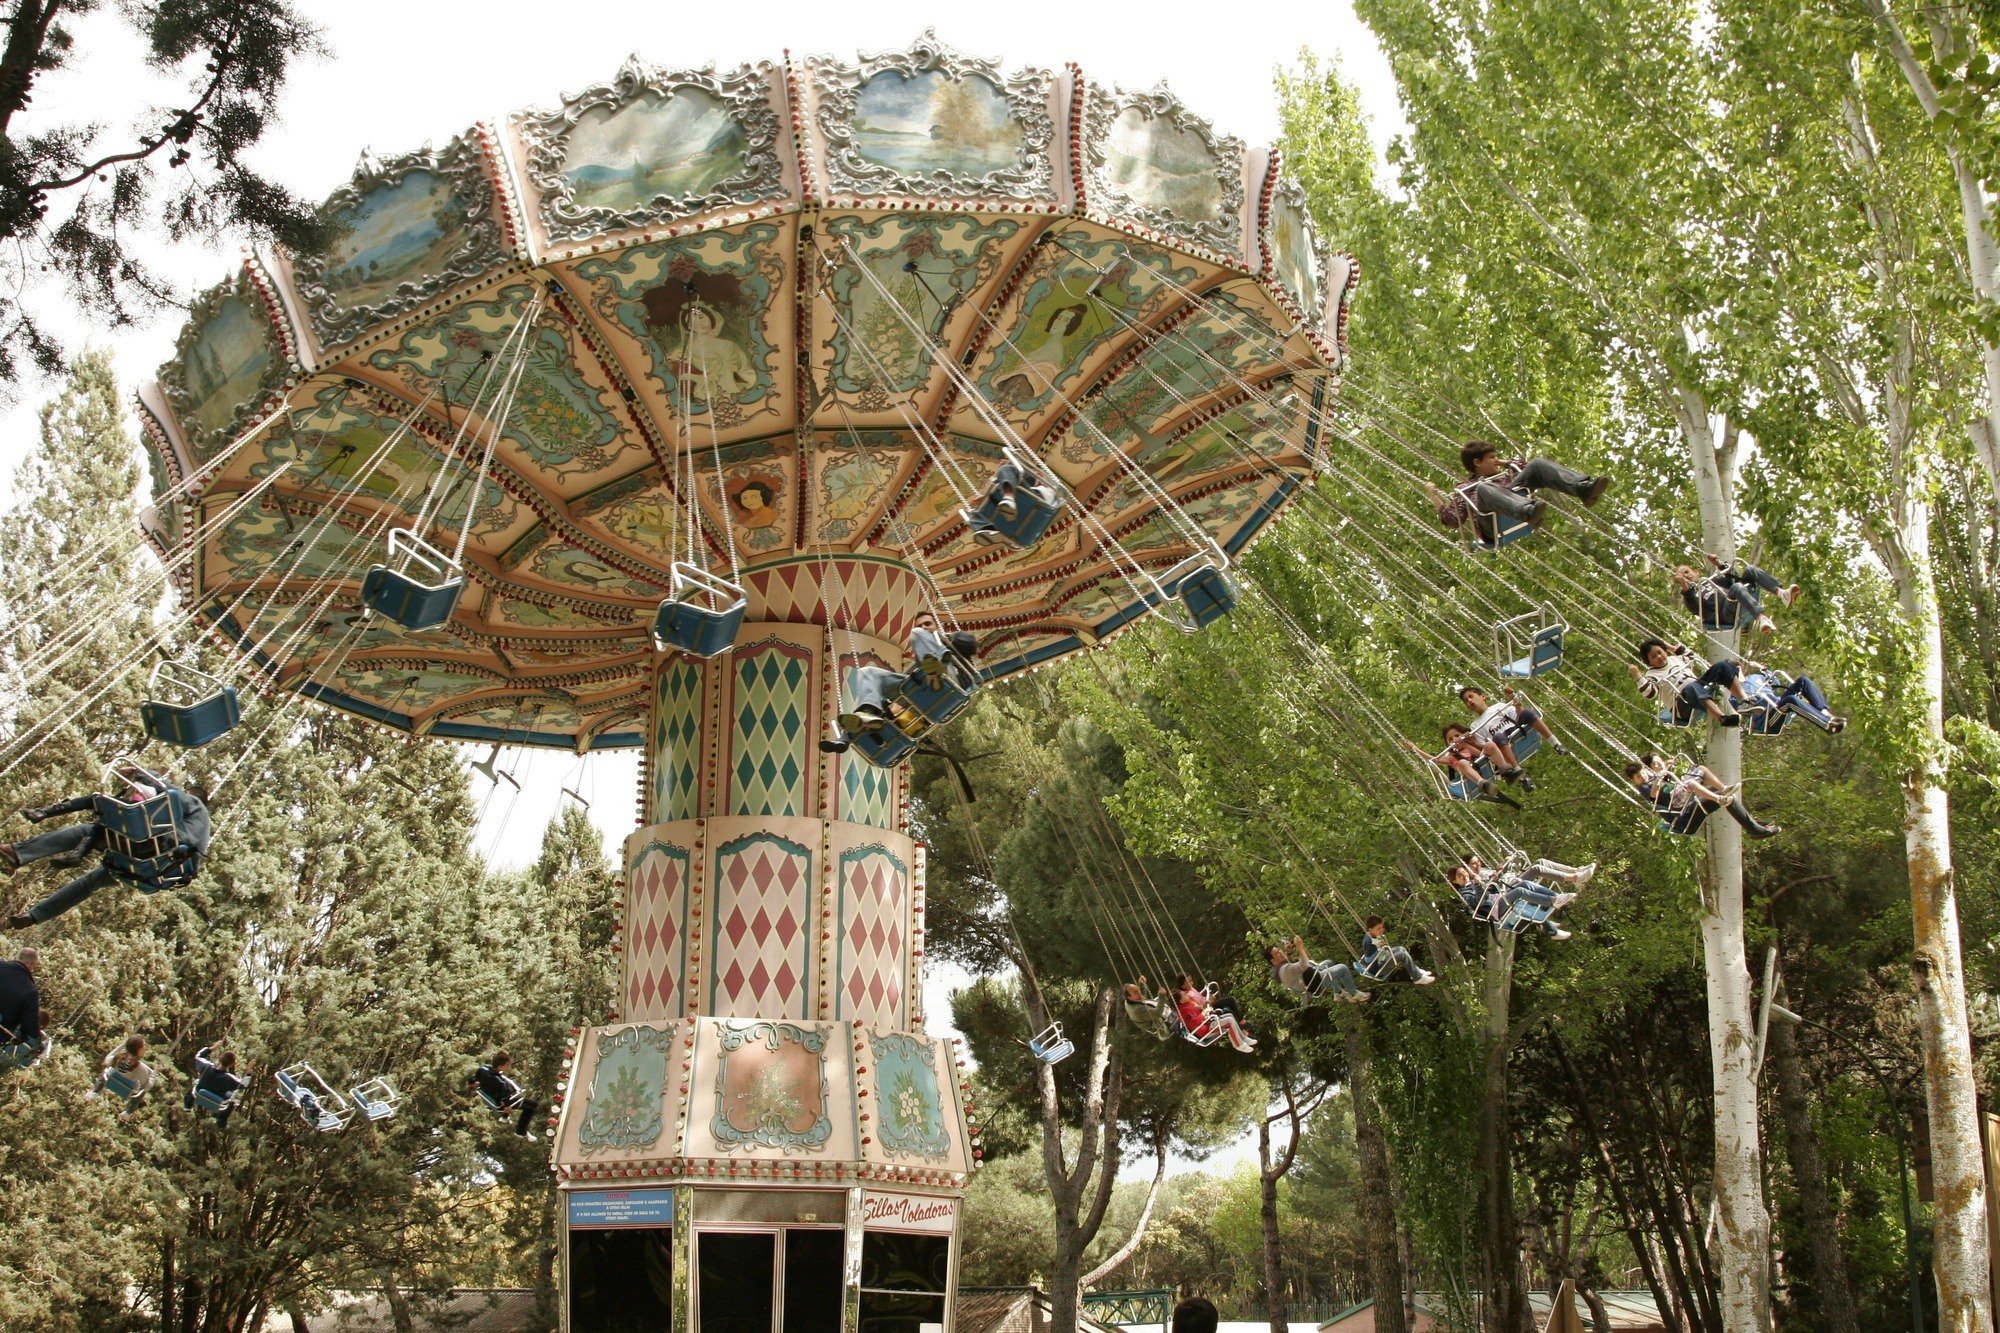 Sillas voladoras en de Atracciones Madrid: Opiniones Info | PACommunity